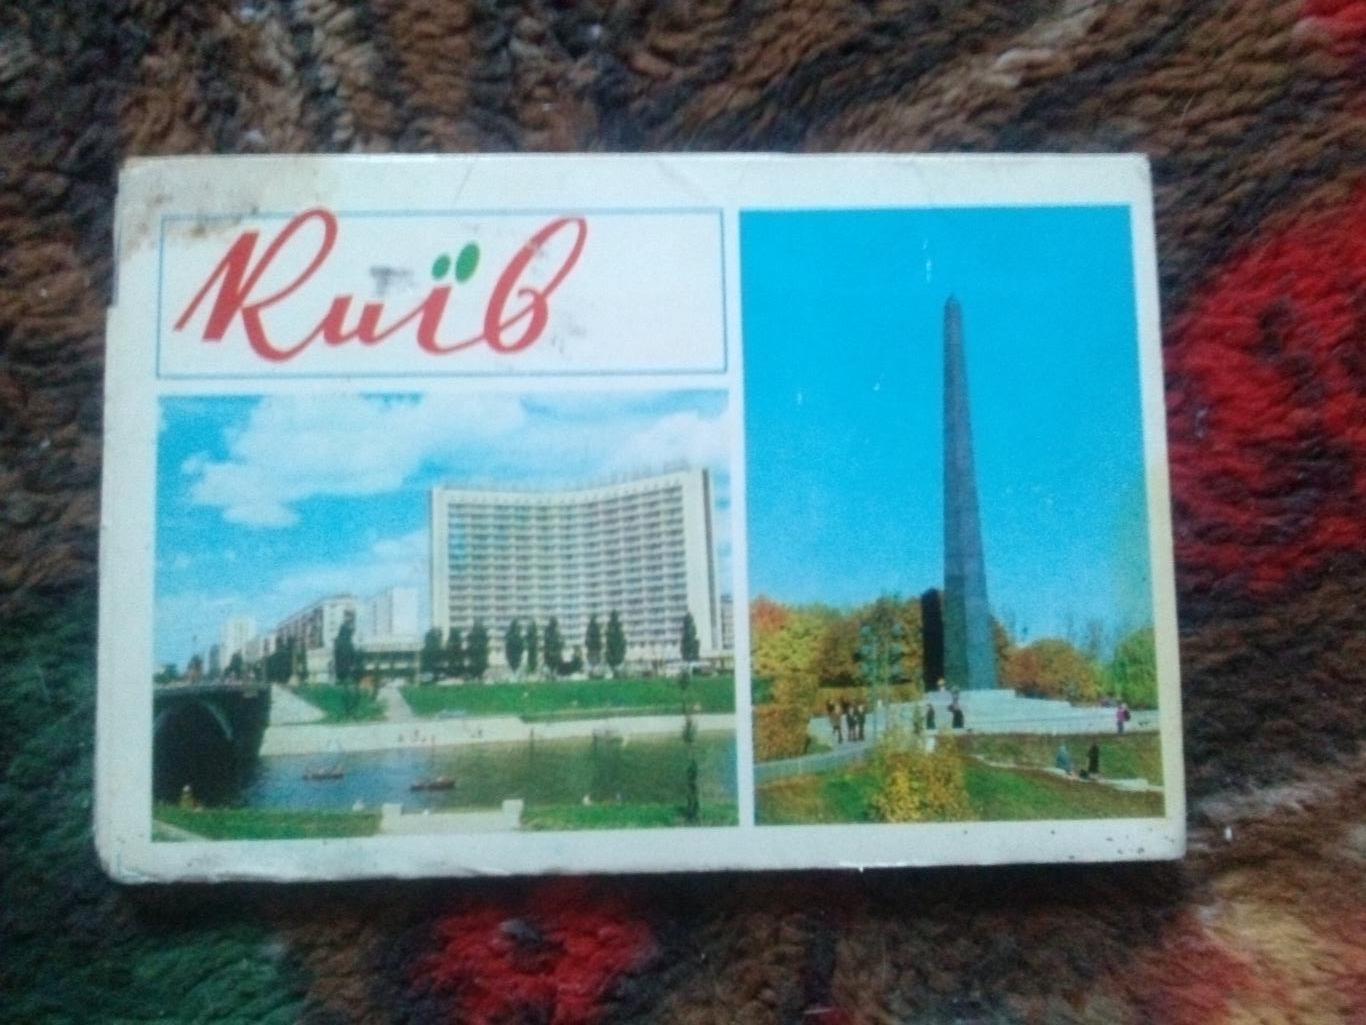 Города СССР : Киев (Украина) 1976 г. полный набор - 16 открыток (чистые , идеал)